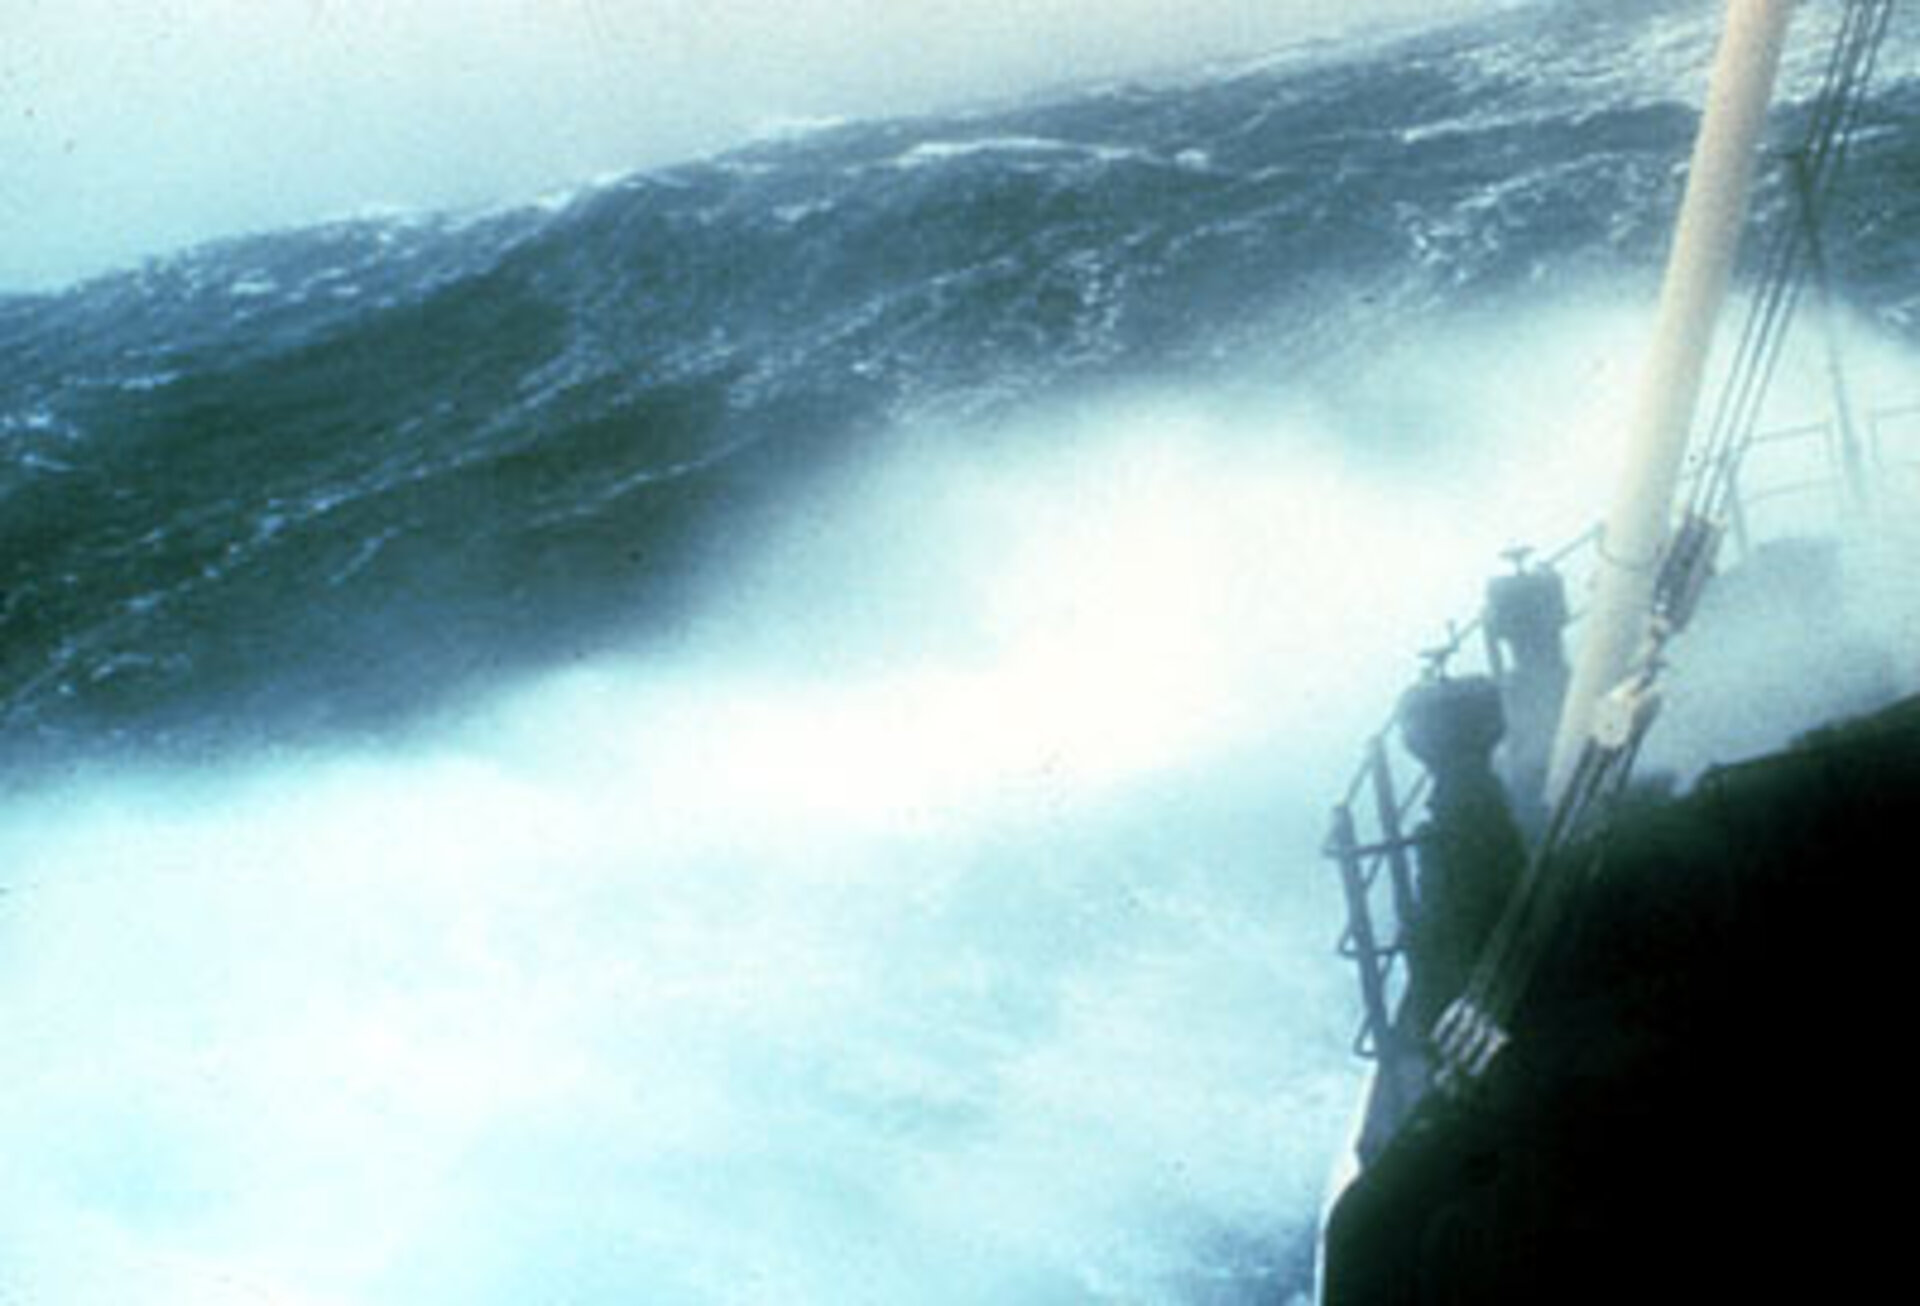 A NOAA Ship in a storm off North Carolina